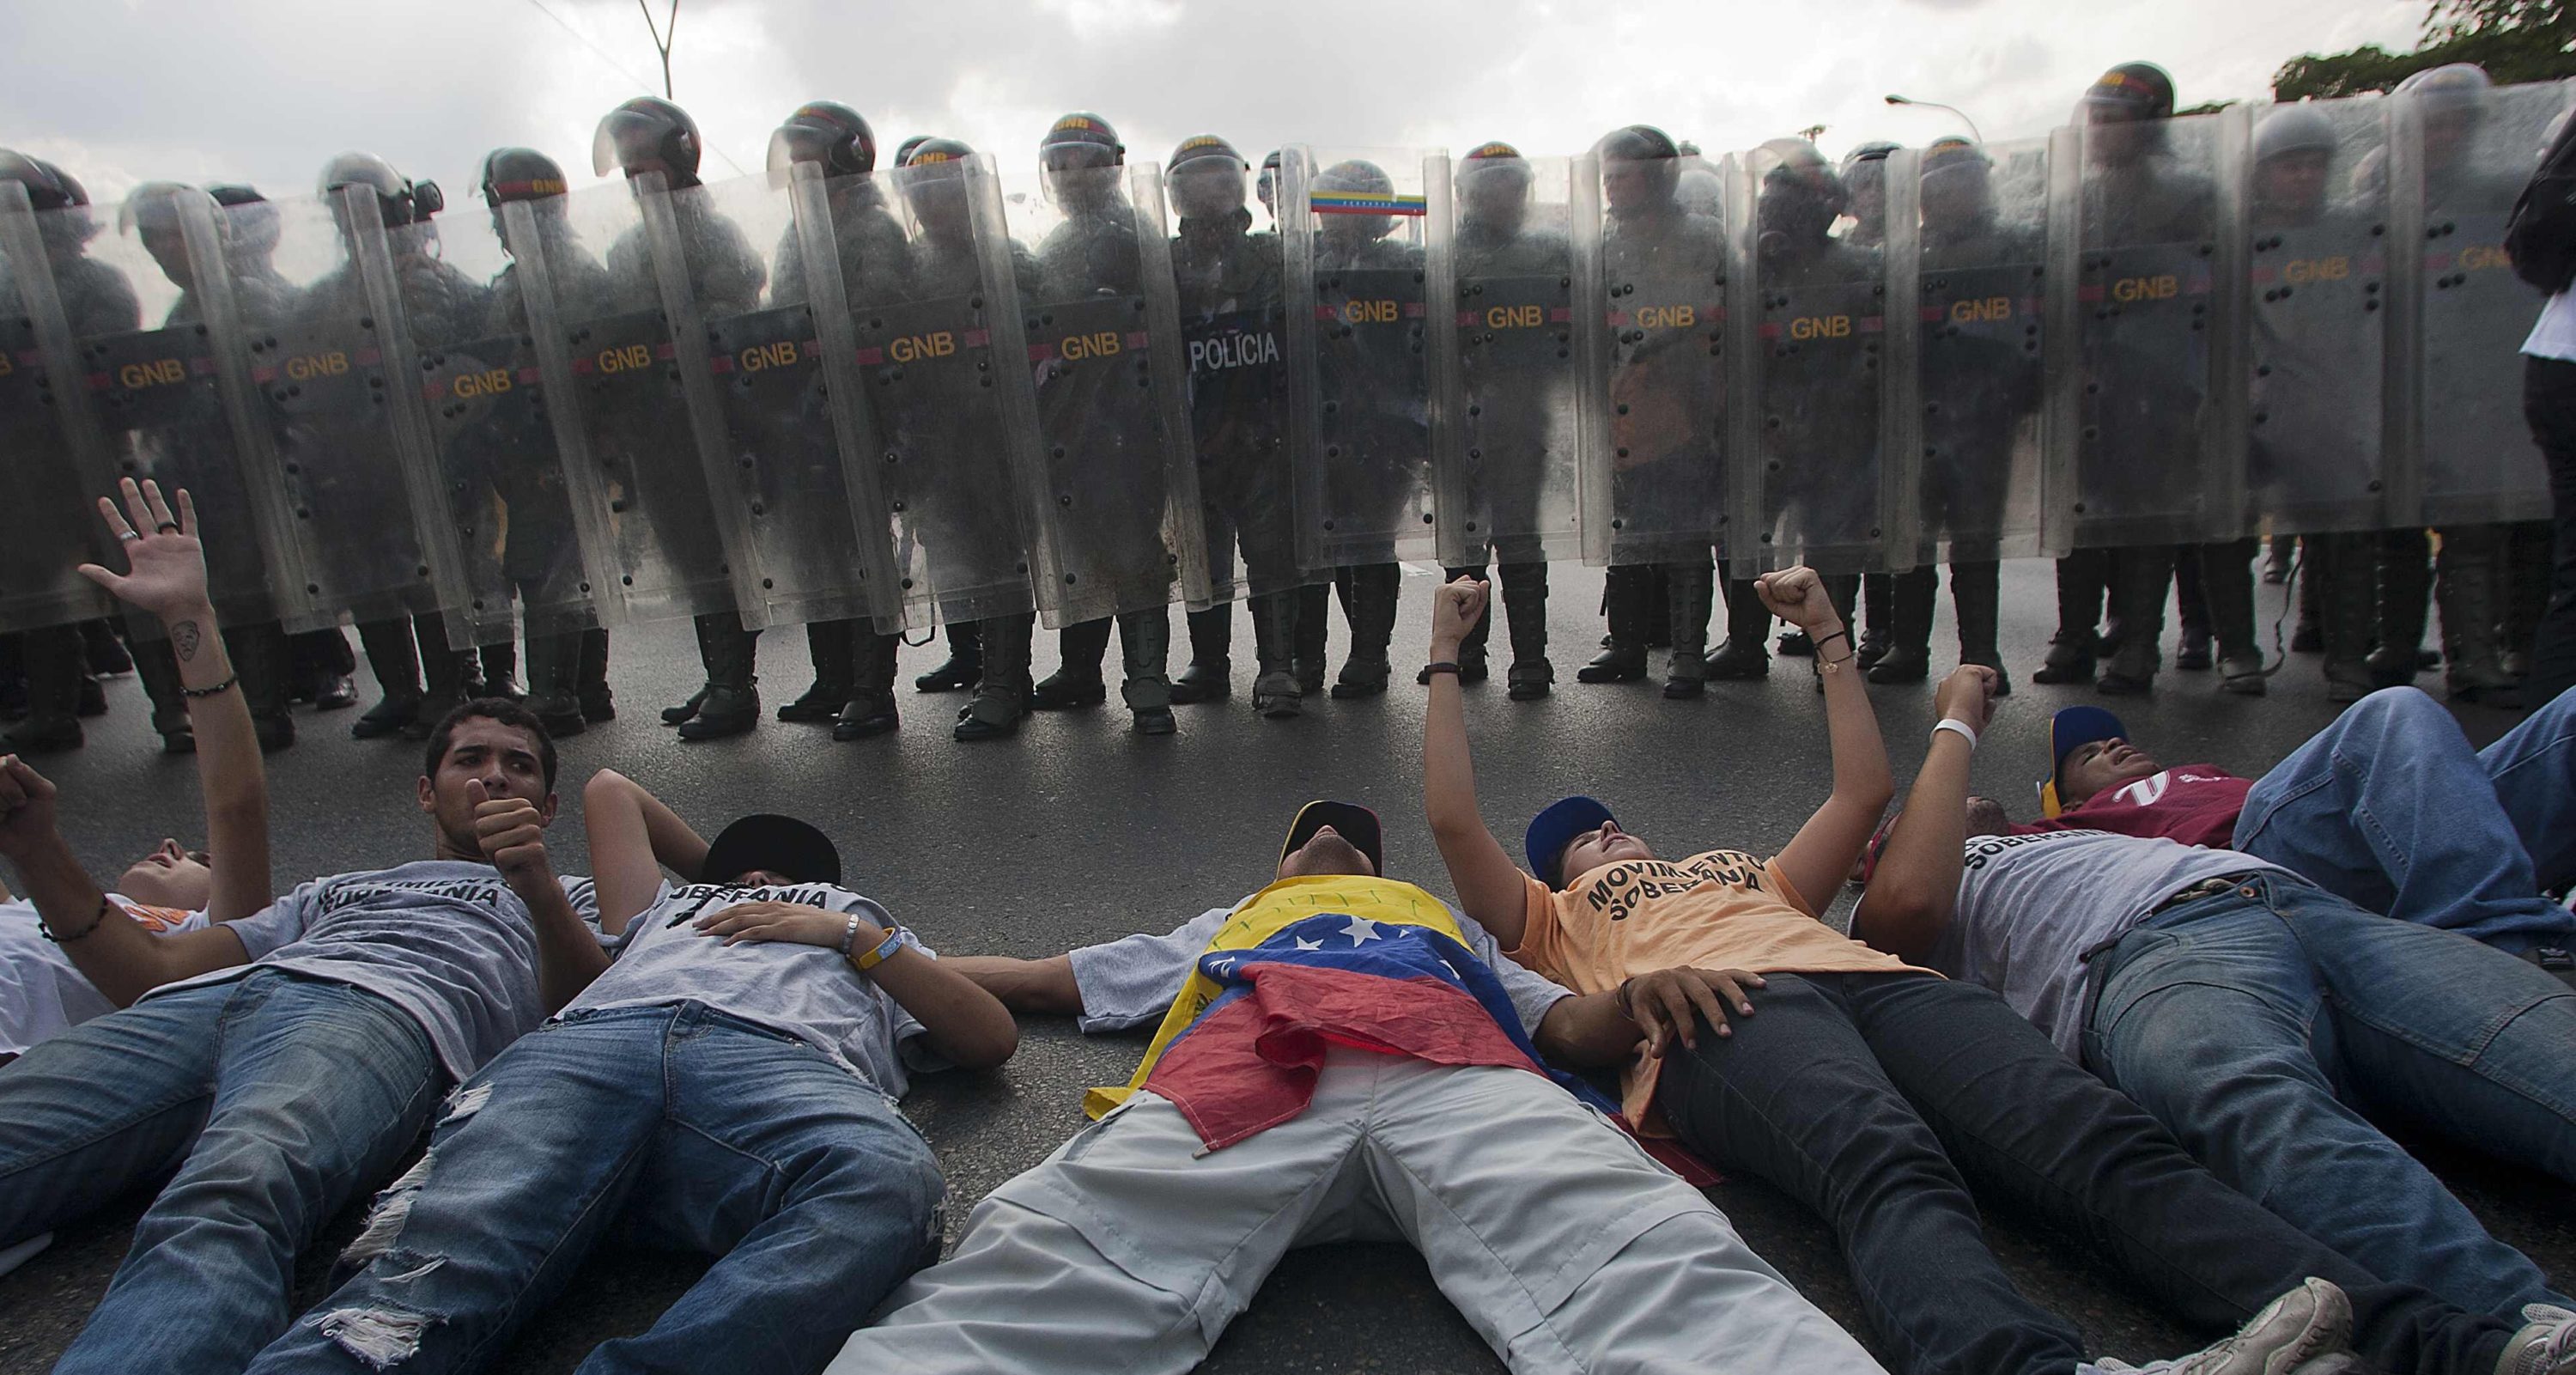 Venezuela’s Economic Collapse & the Rise of Authoritarianism